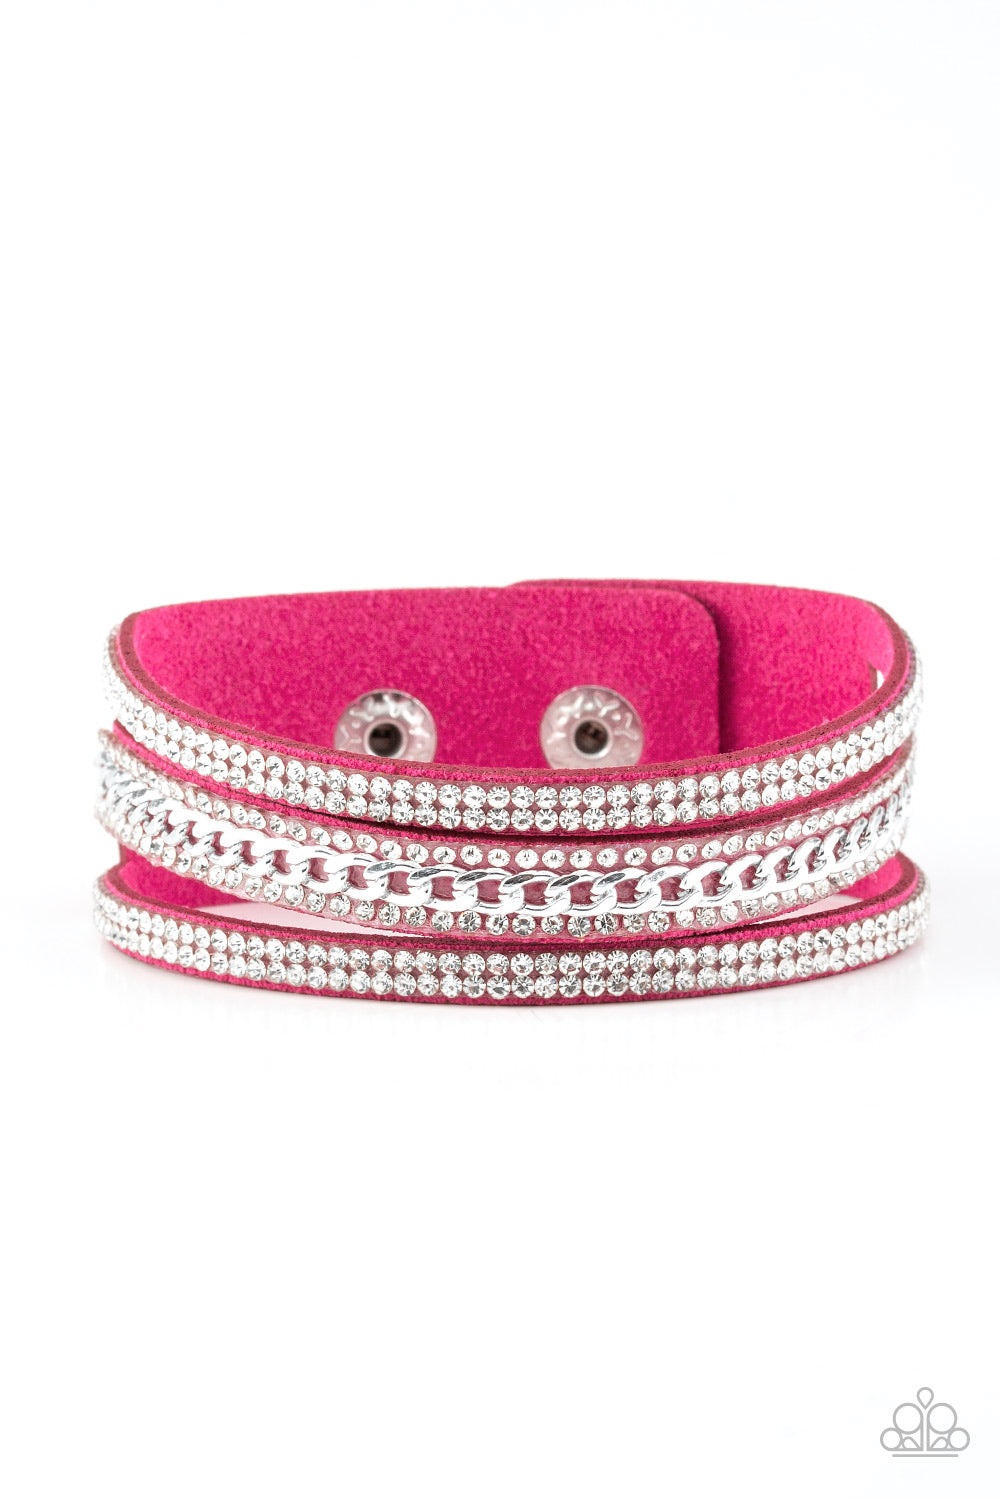 Paparazzi Rollin in Rhinestones Pink Wrap Bracelet